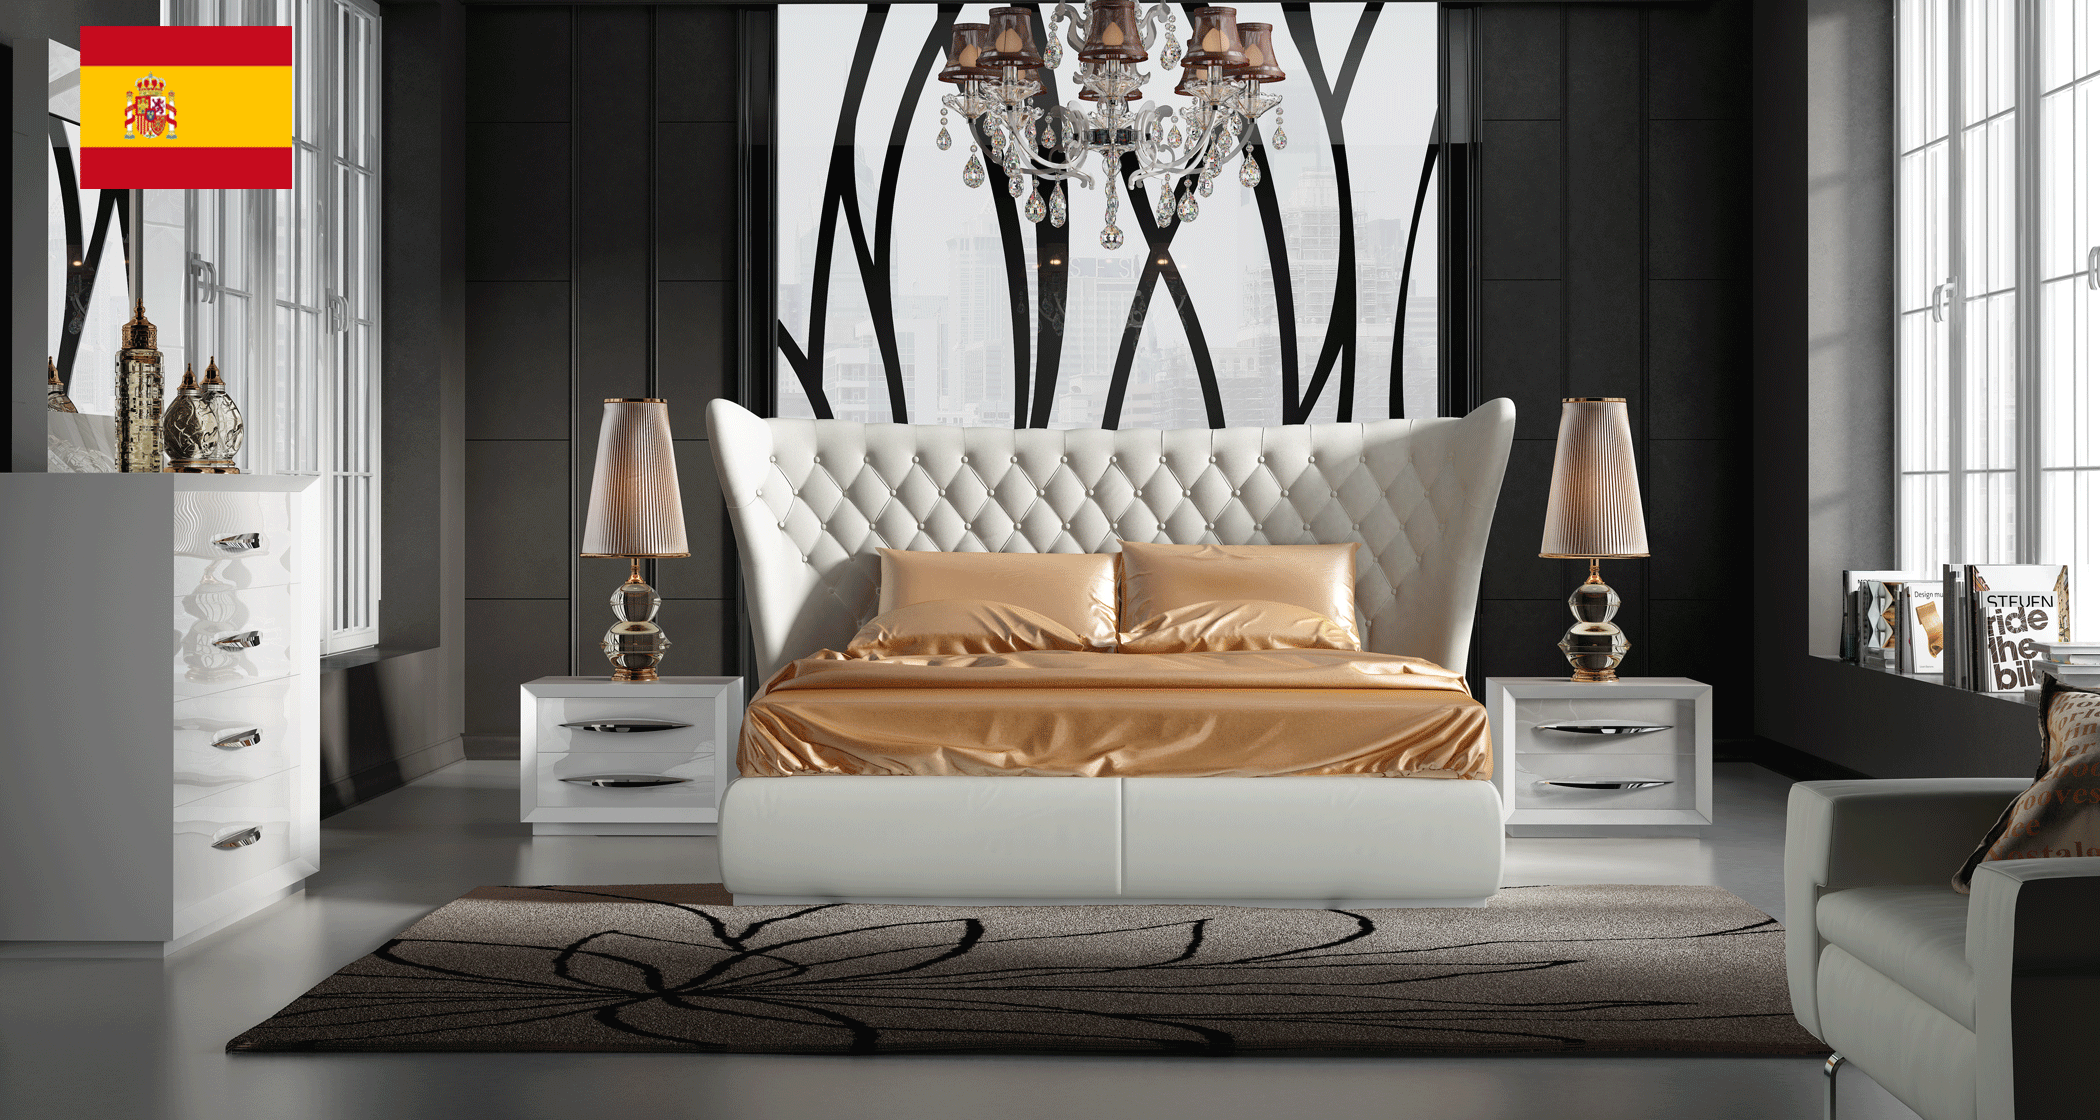 Bedroom Furniture Nightstands Miami Bedroom